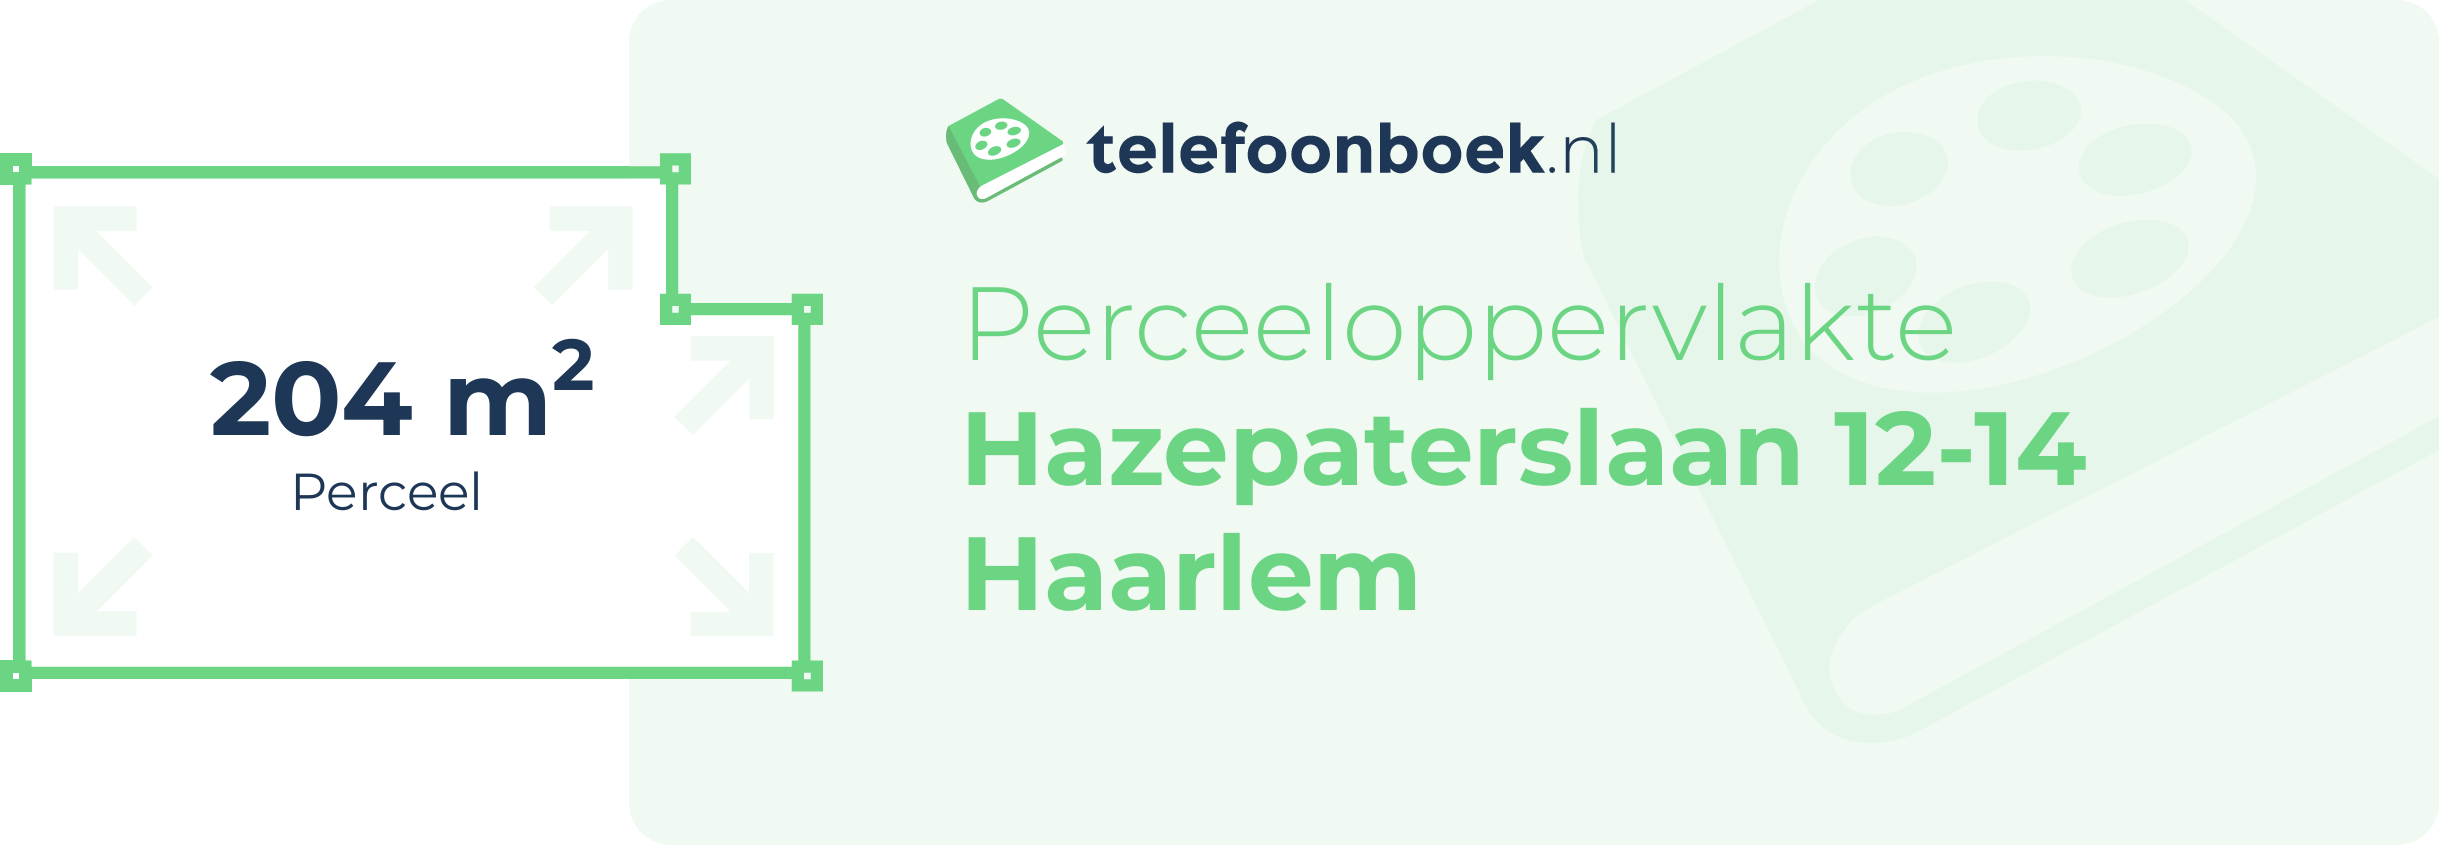 Perceeloppervlakte Hazepaterslaan 12-14 Haarlem